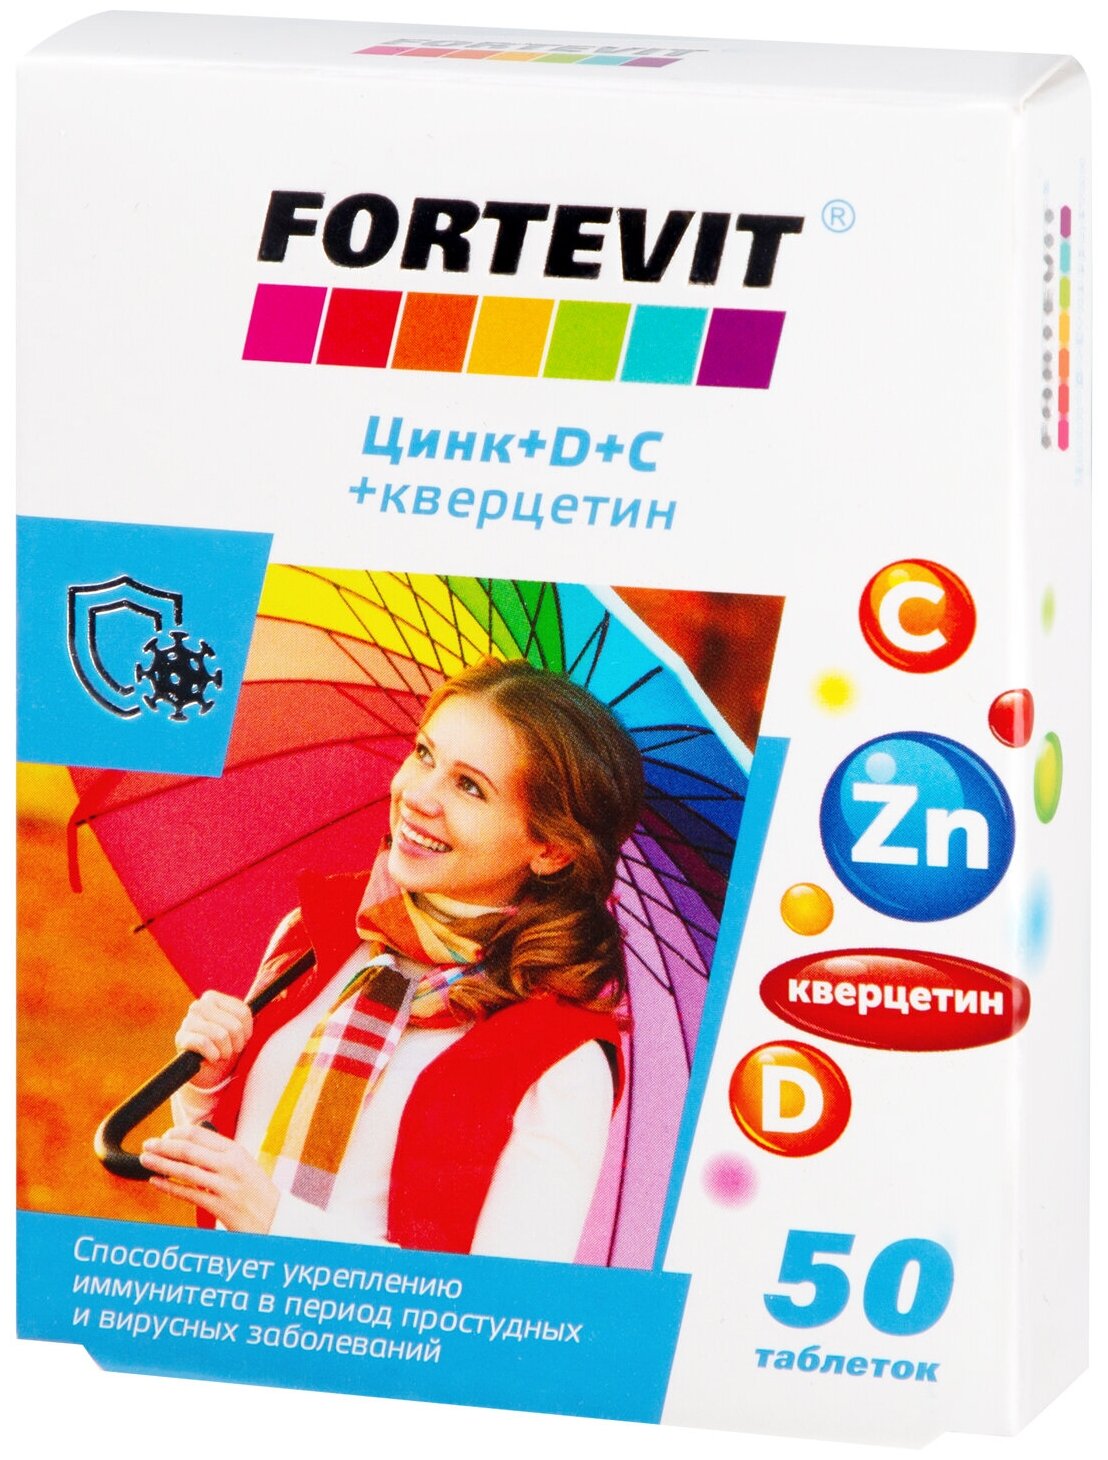 Цинк витамины D C + кверцетин Fortevit для взрослых витаминно минеральный комплекс для энергии иммунитета 50 таблеток